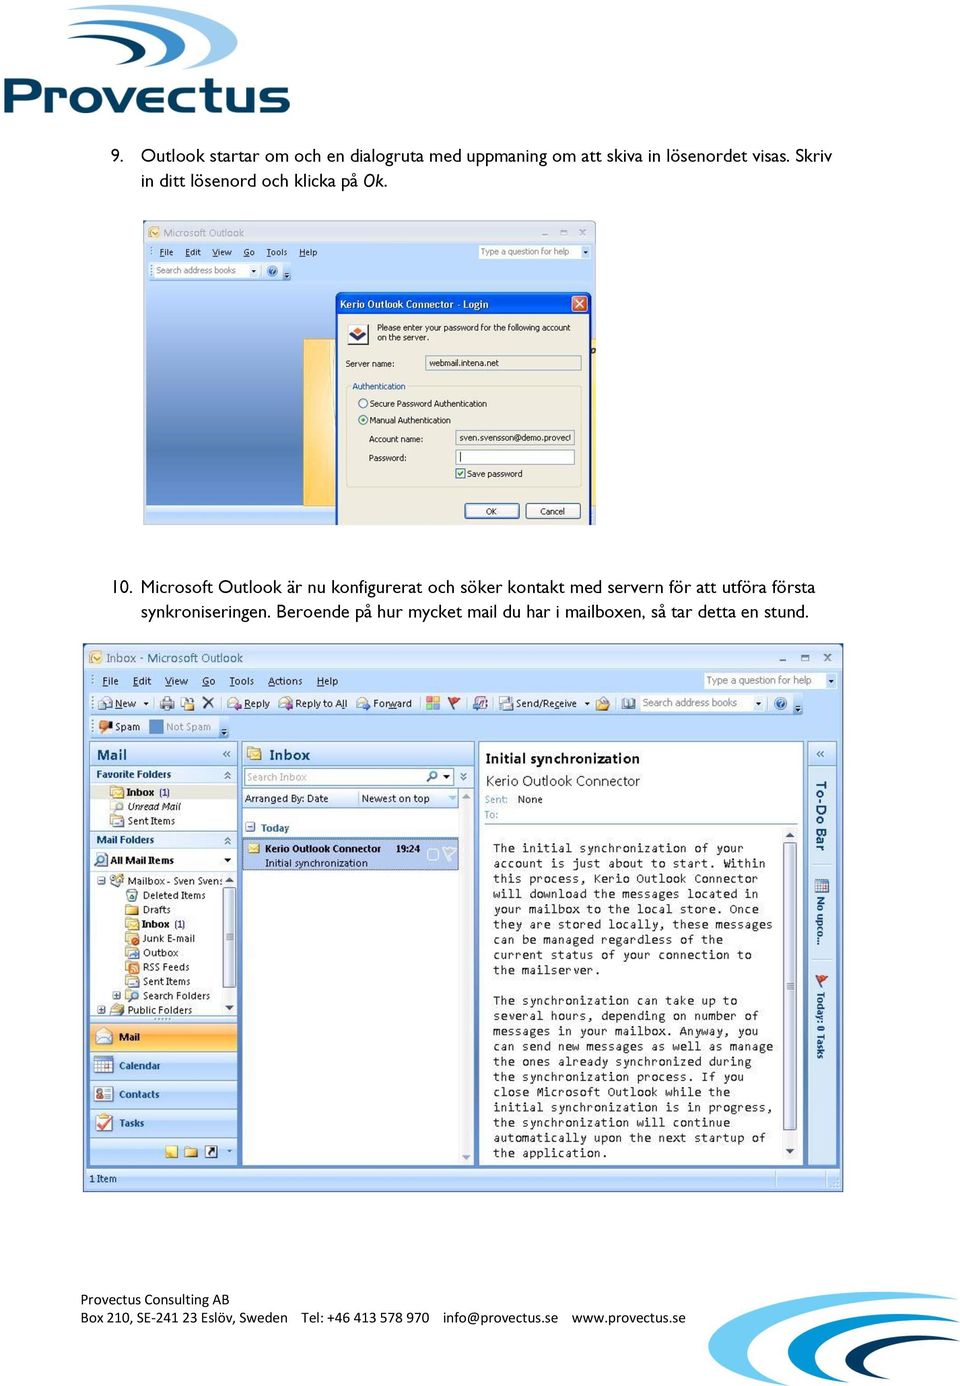 Microsoft Outlook är nu konfigurerat och söker kontakt med servern för att